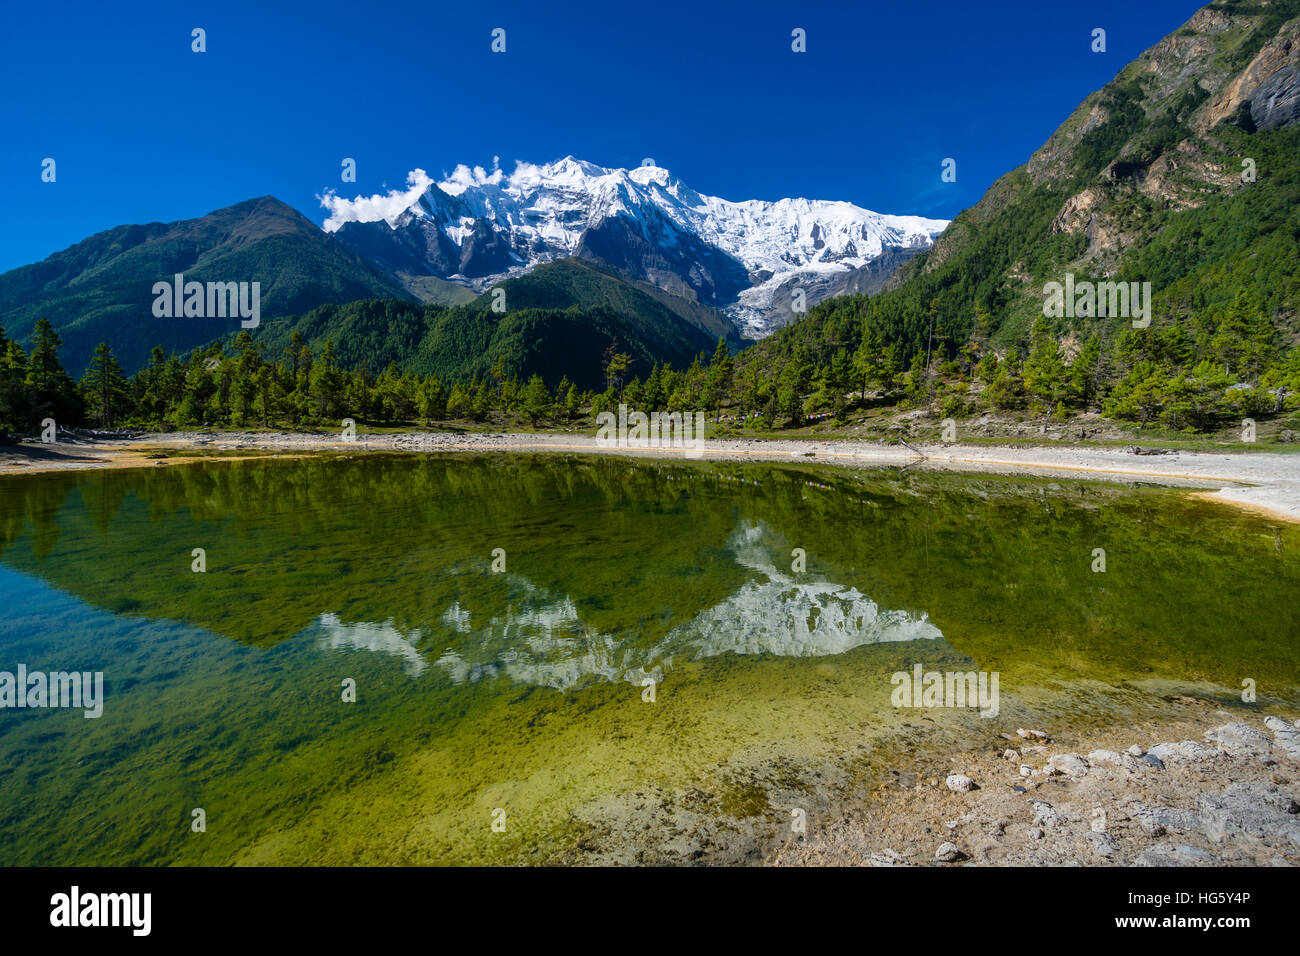 Montagne enneigée 2 Annapurna, miroir dans un lac, Upper Marsyangdi valley, Lower Pisang, District de Manang, Népal Banque D'Images